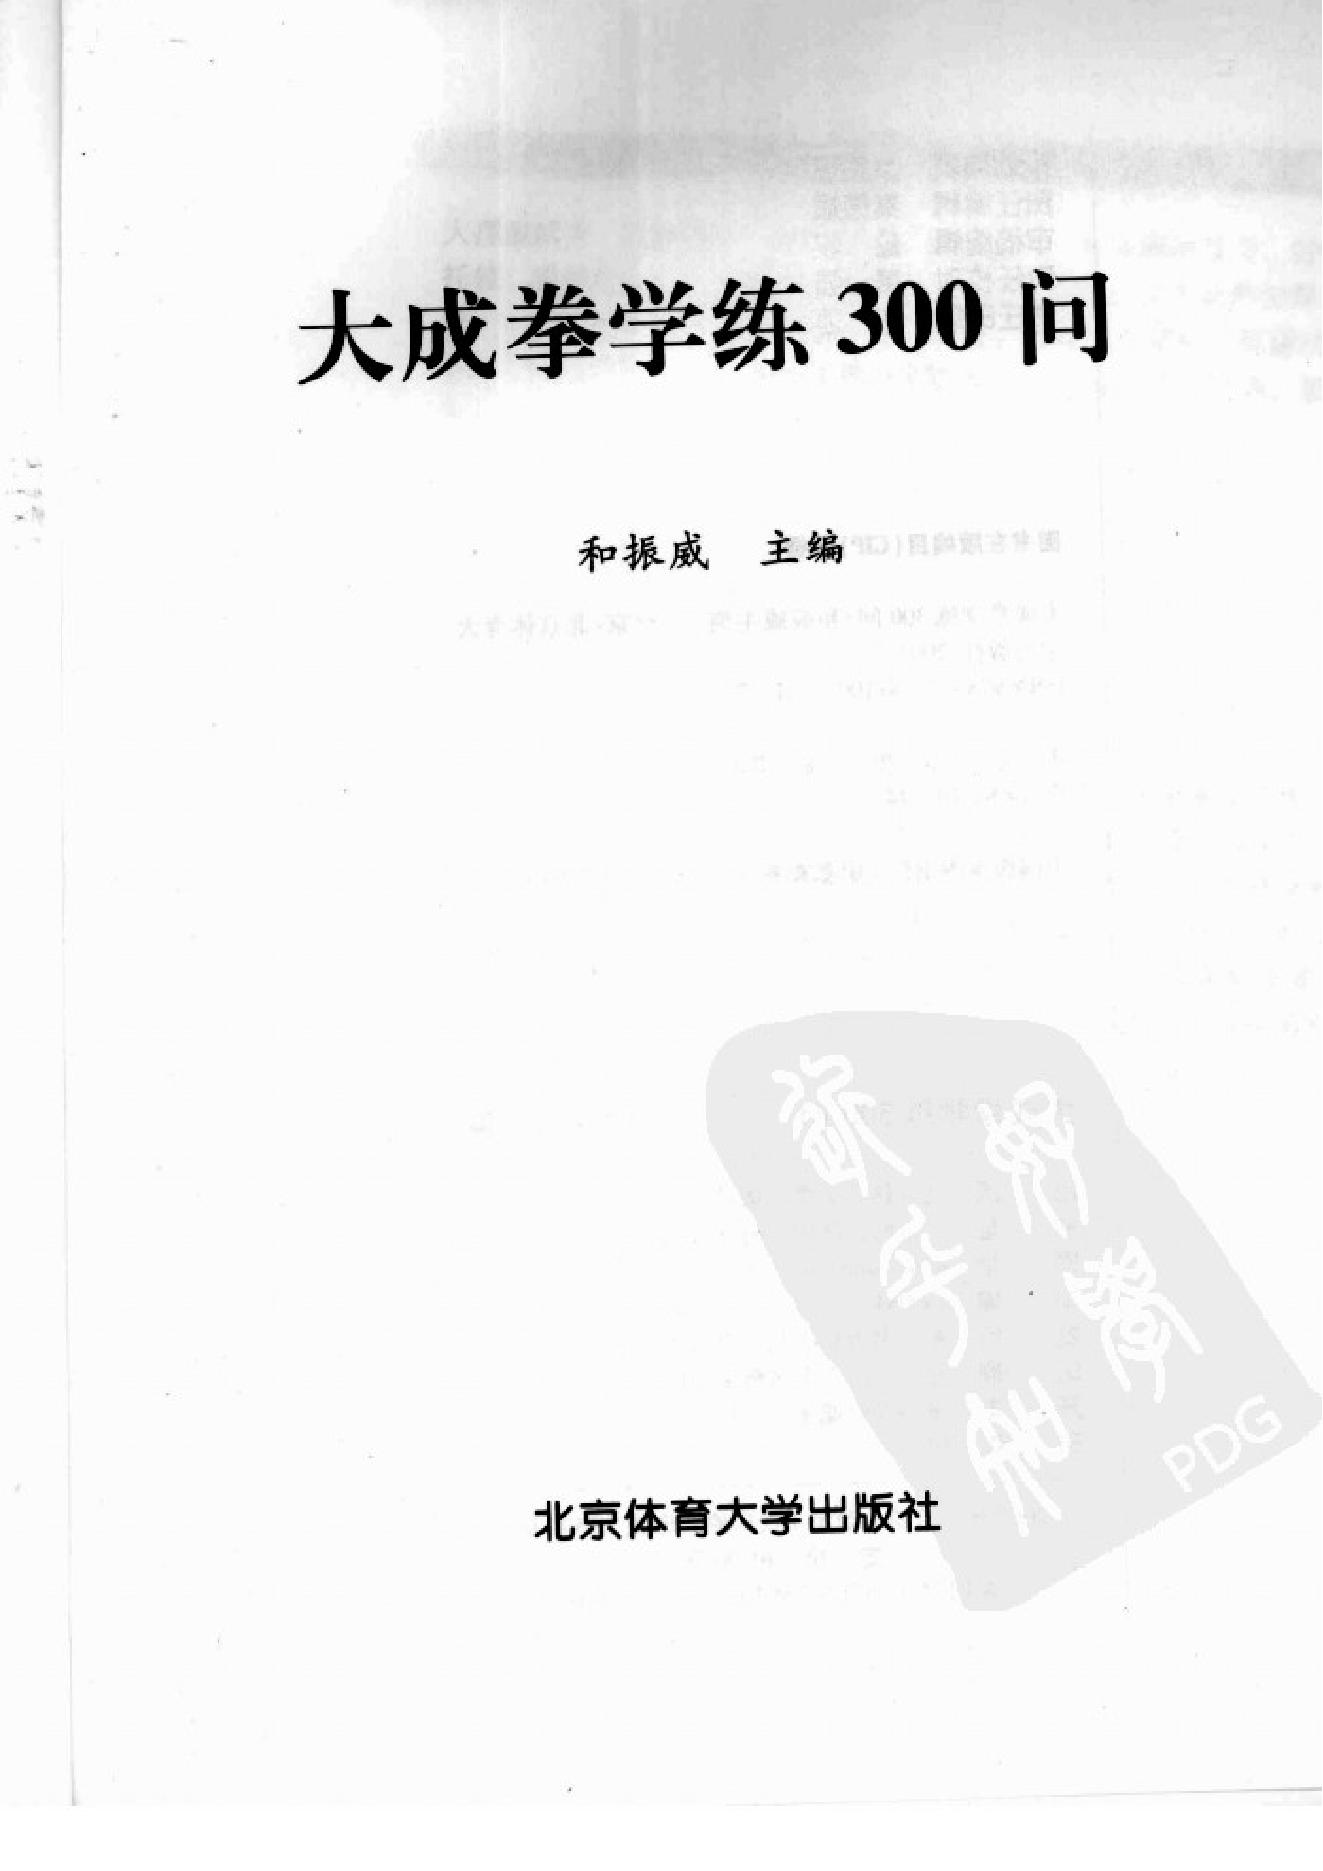 [大成拳学练300问].和振威.扫描版.pdf(33.78MB_302页)